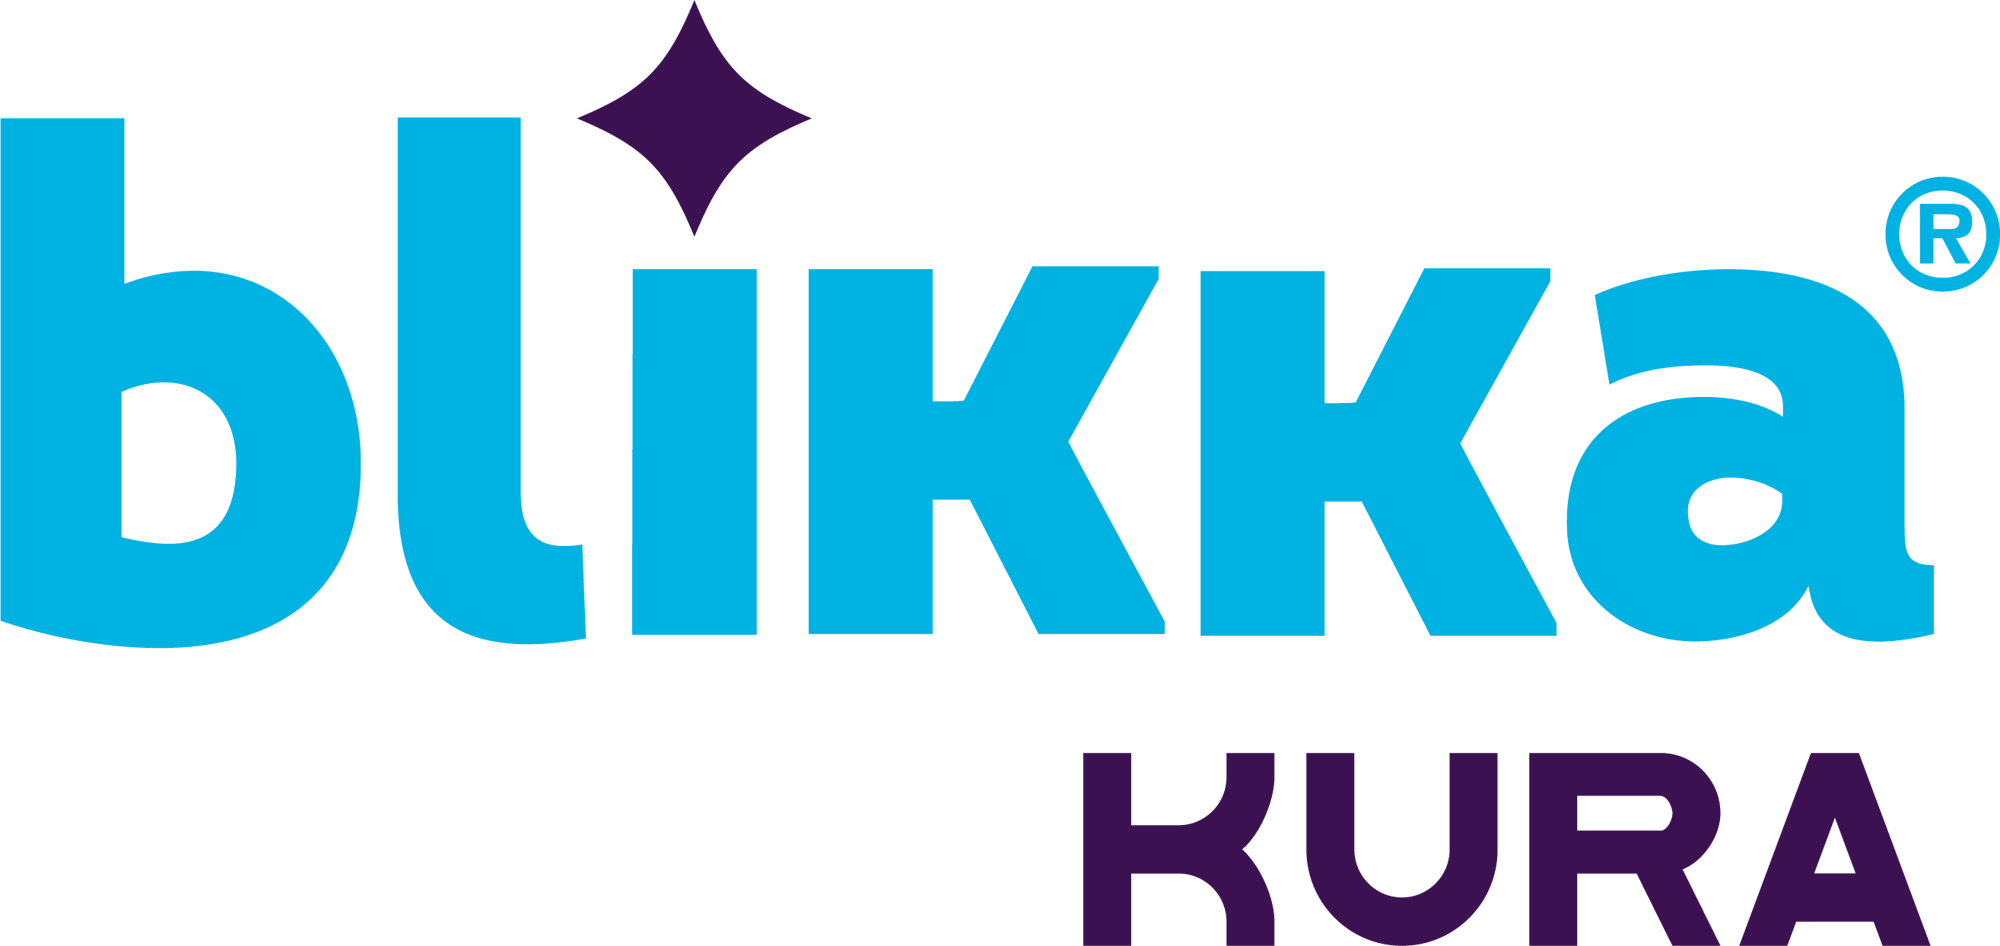 Blikka_Logo-1